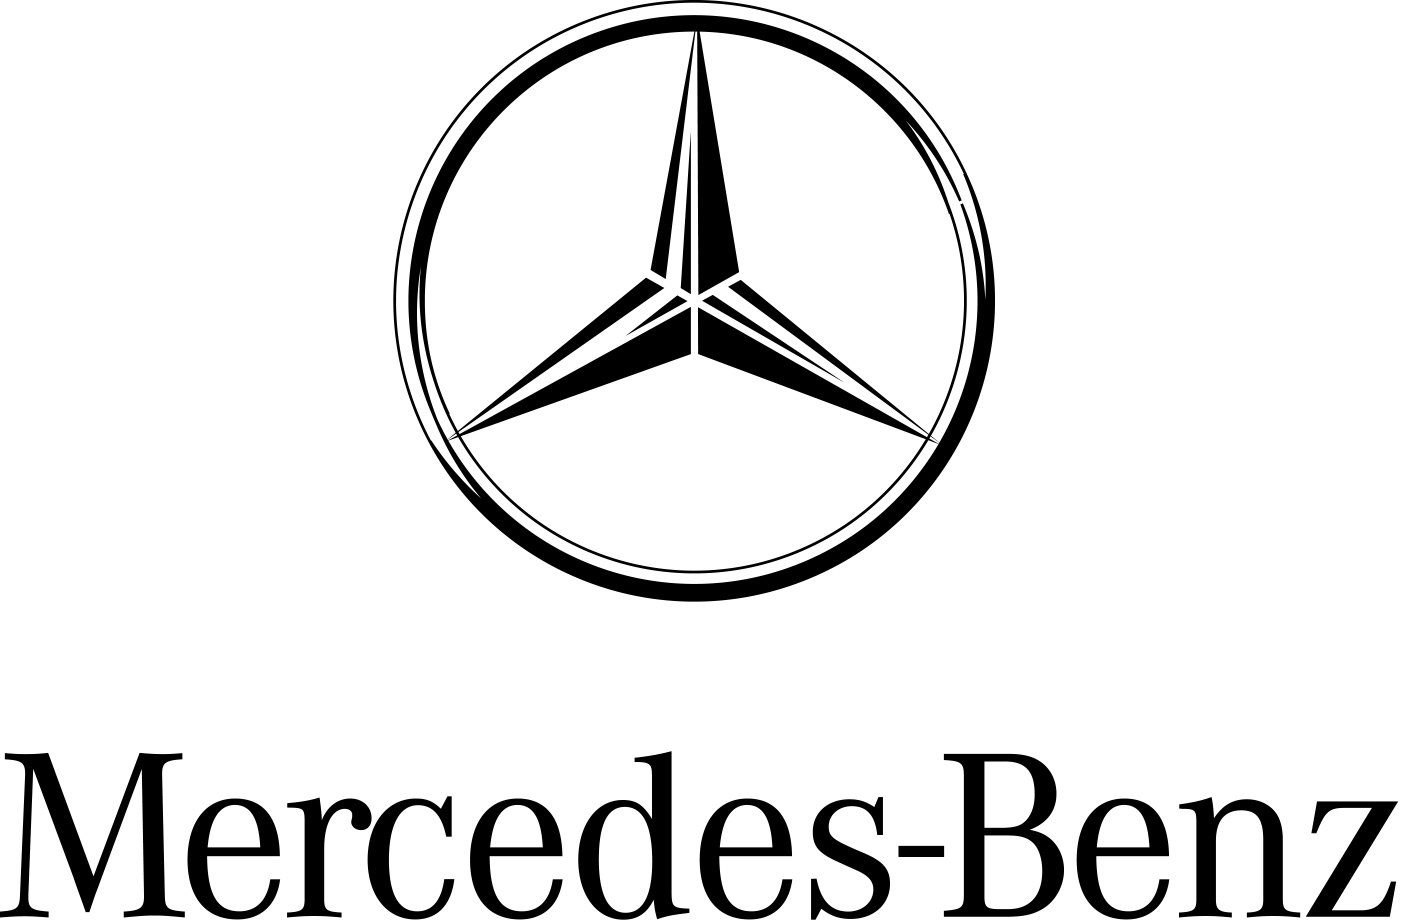 Điểm danh các hãng xe của Đức đình đám nhất - Mercedes - Benz